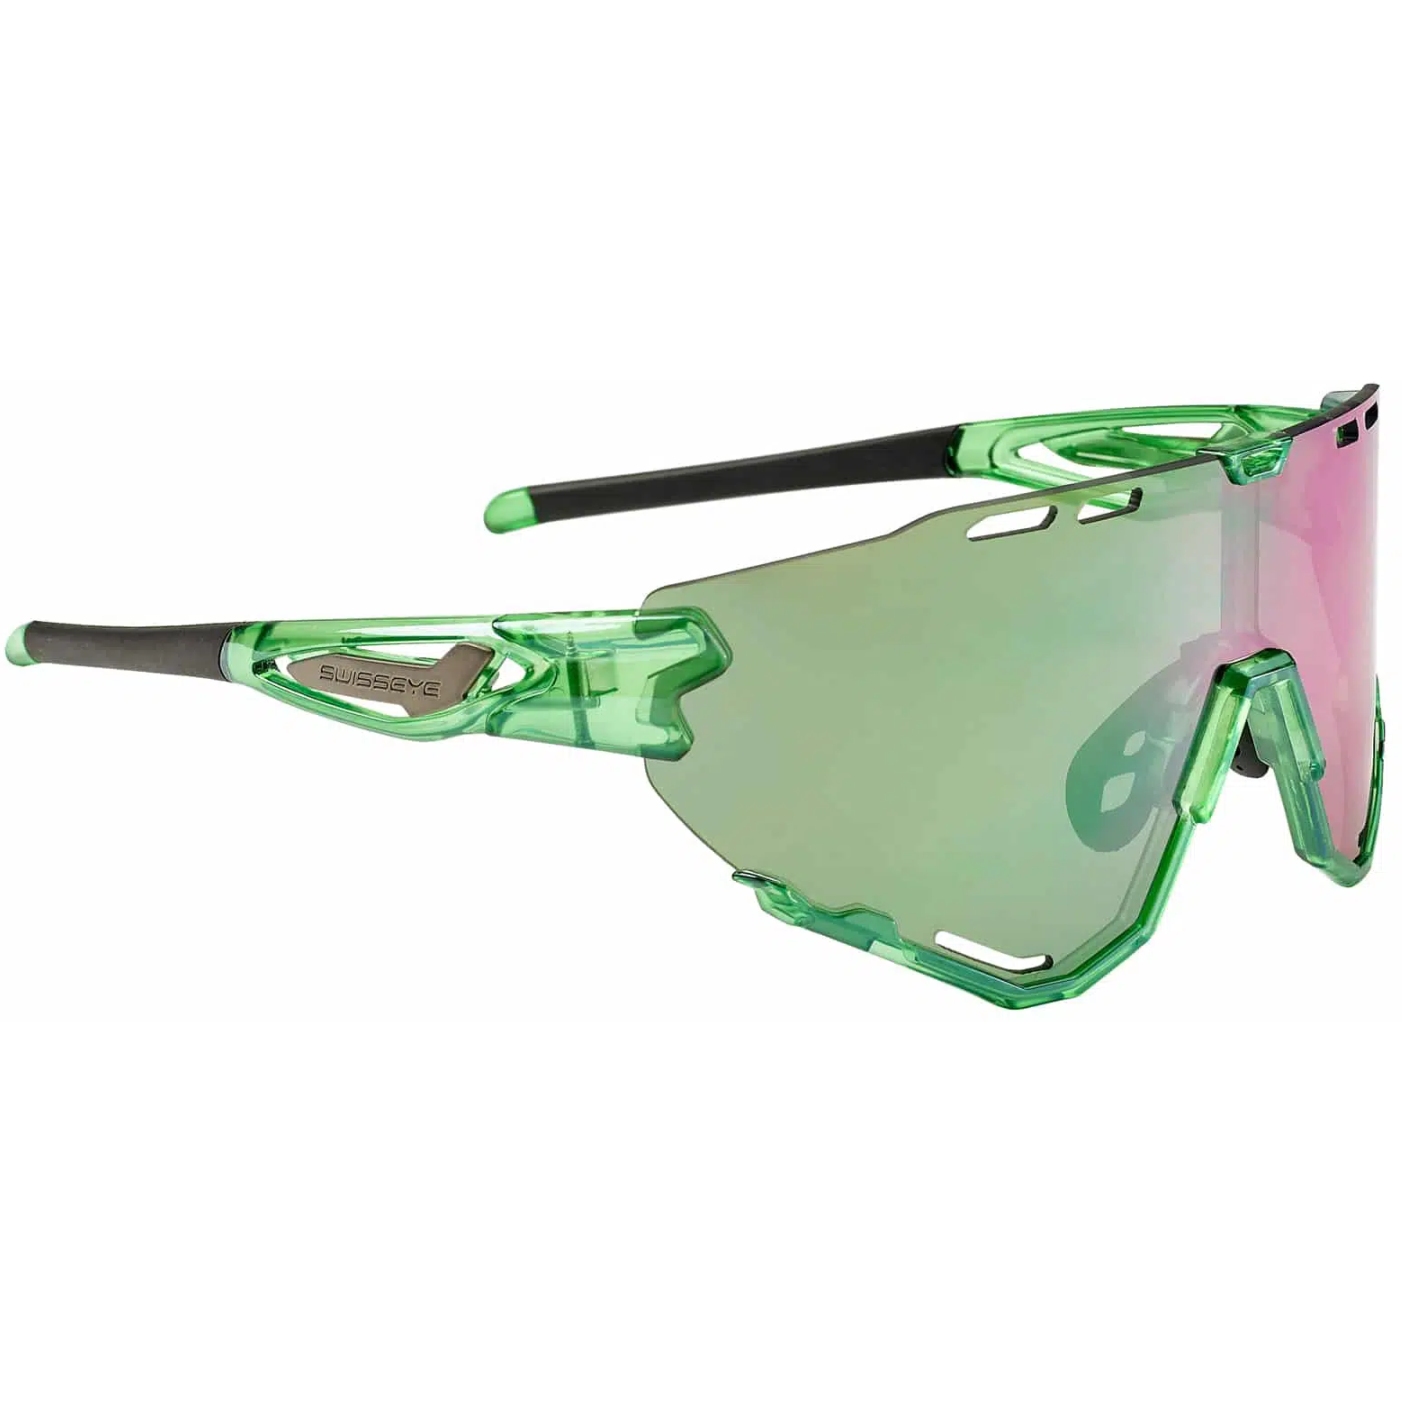 Produktbild von Swiss Eye Mantra Brille 13027 - Shiny Laser Green - Green Fluo-Green Revo